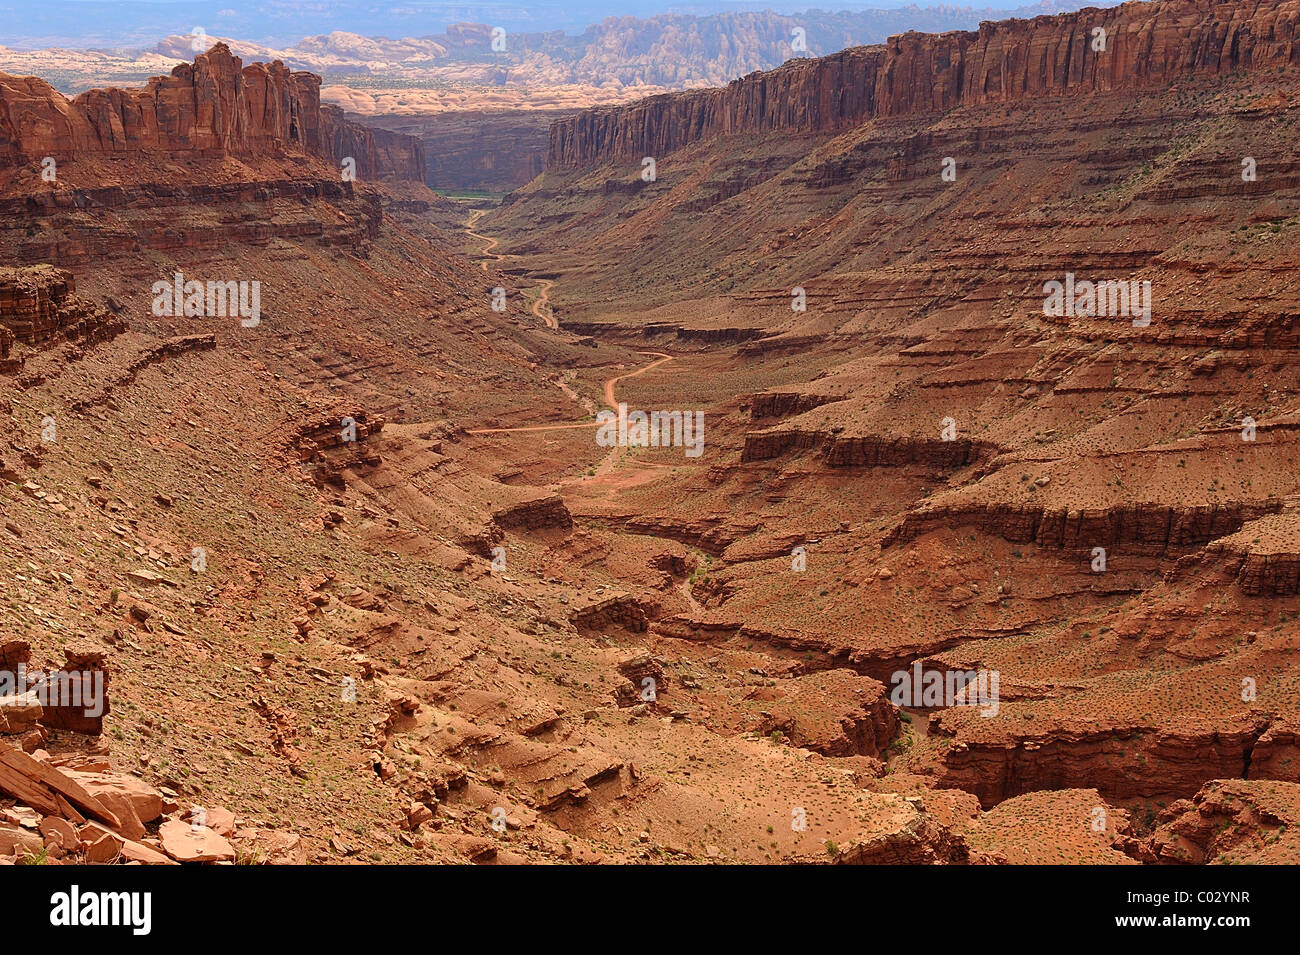 Canyonlands National Park, rock formation, Île dans le ciel, près de Moab, États-Unis Banque D'Images